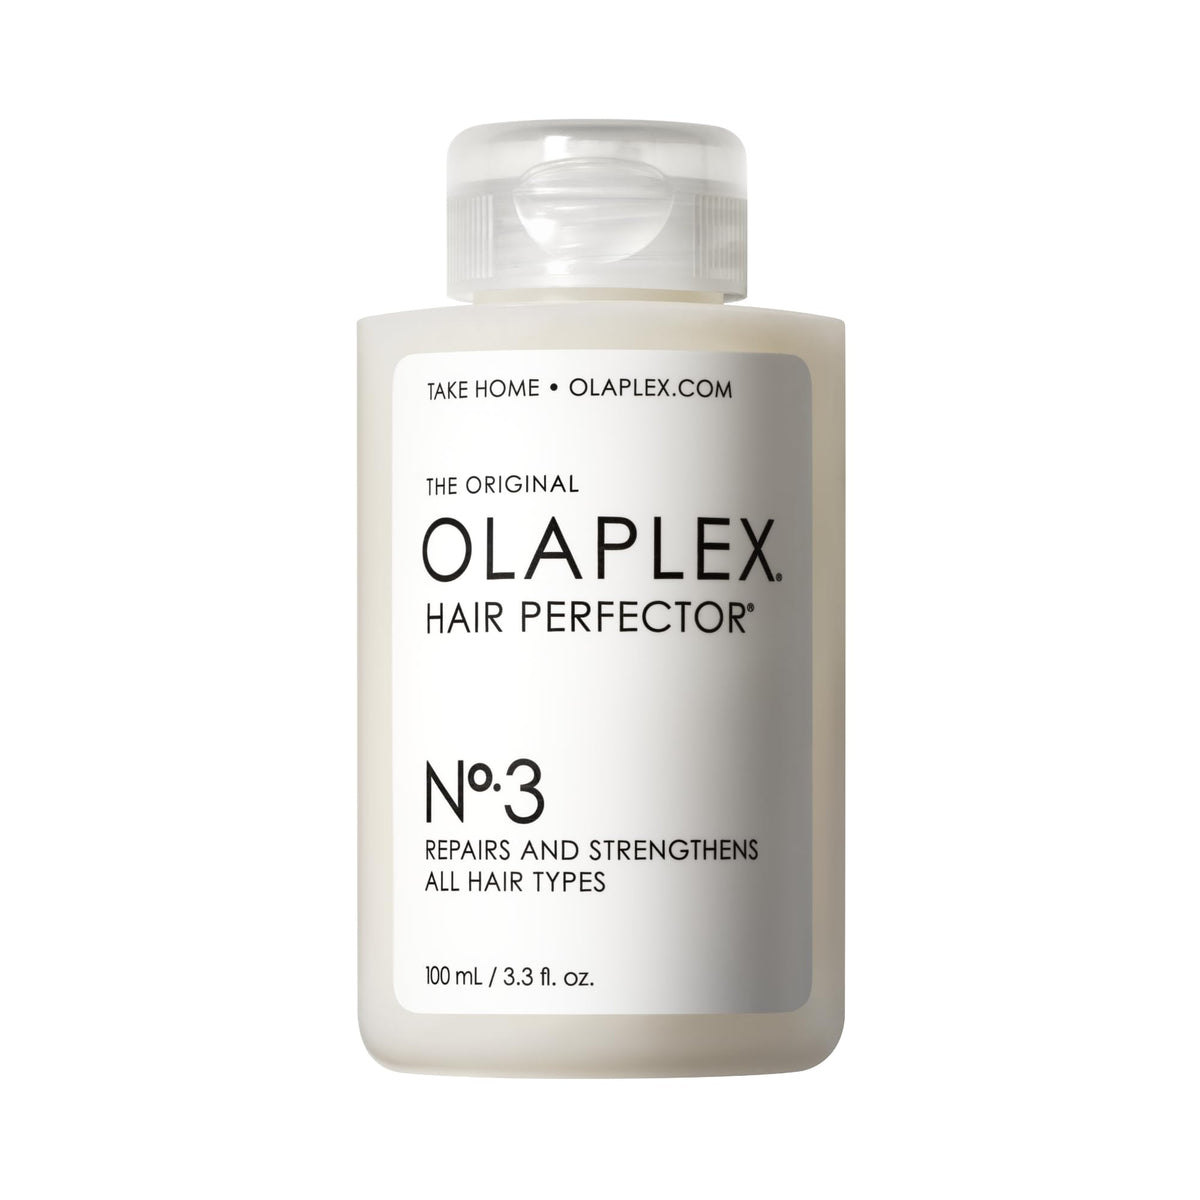 OLAPLEX Hair Perfector No.3 Repairing Treatment, 100ml